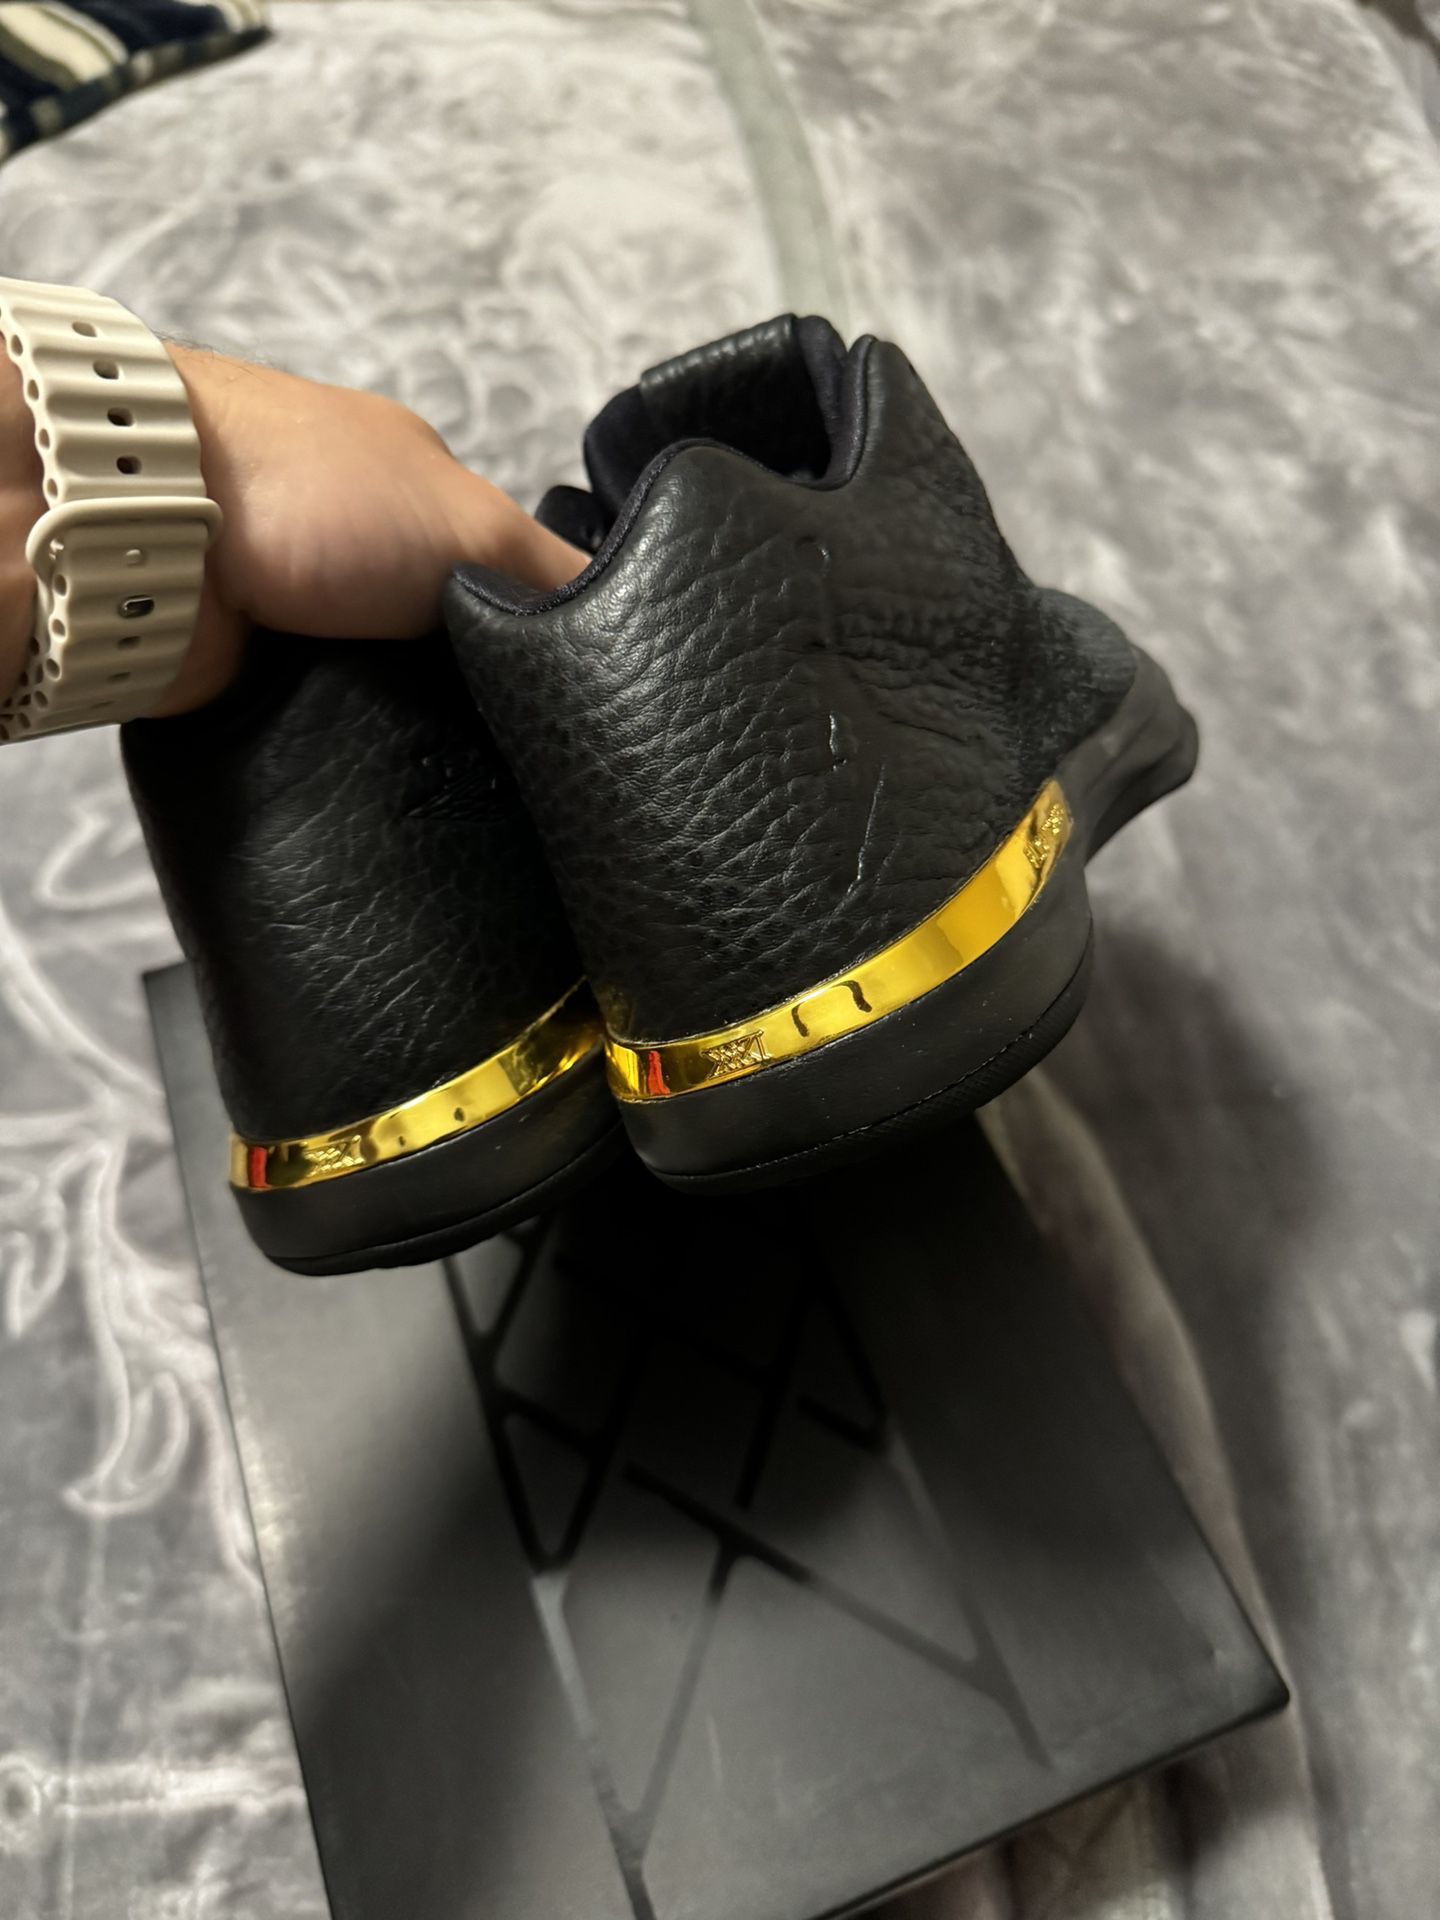 Air Jordan 31 Low “Black” Size 10